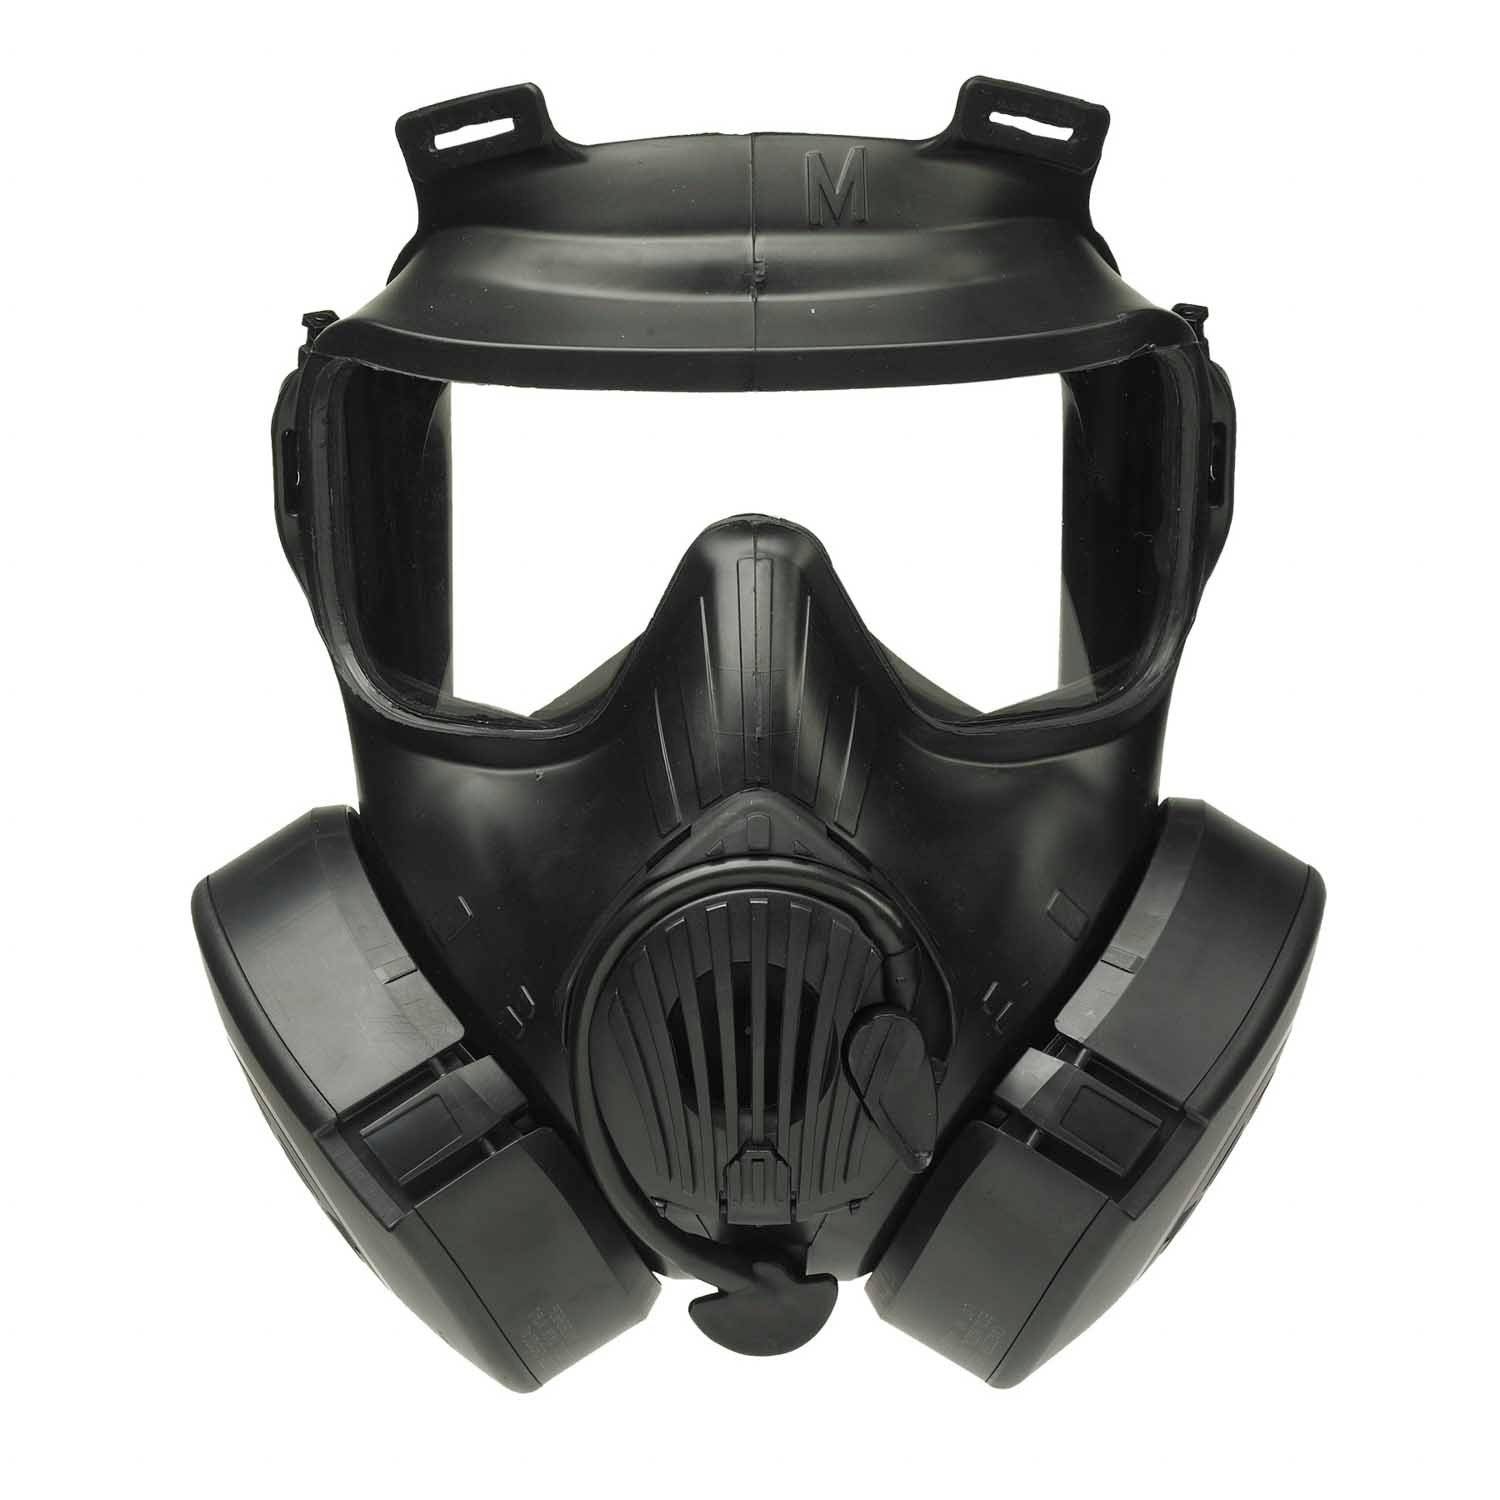 Avon M50 Gas Mask Avon Mask Avon Gas Mask